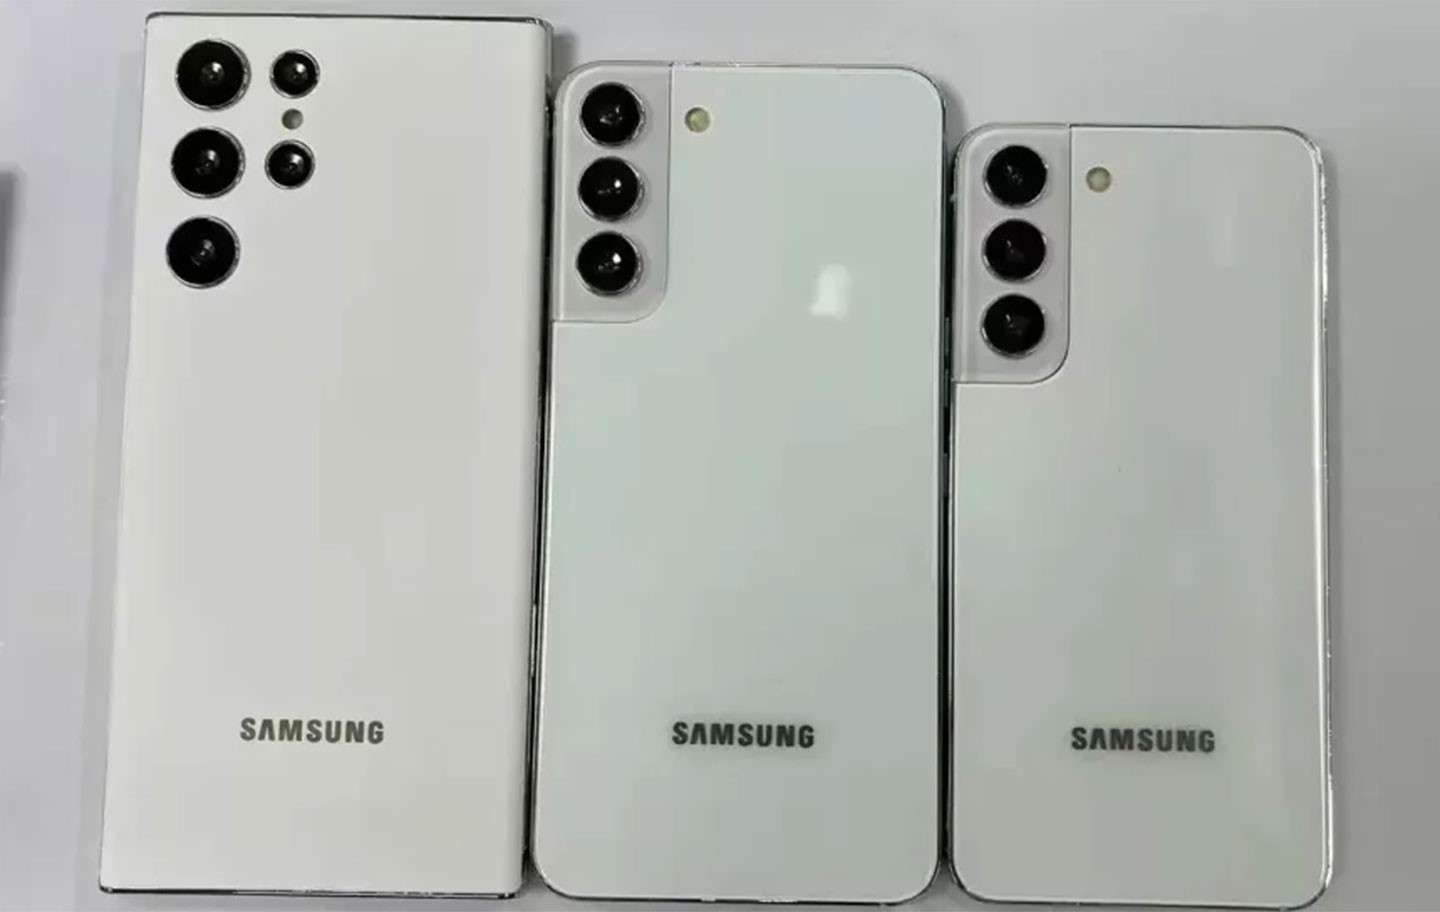 國外媒體 Techrader 日前爆料 Galaxy S22 系列（圖上左至右為 S22 Ultra、S22+ 與 S22）的配色，其白色會是貫穿各系列的基本款。